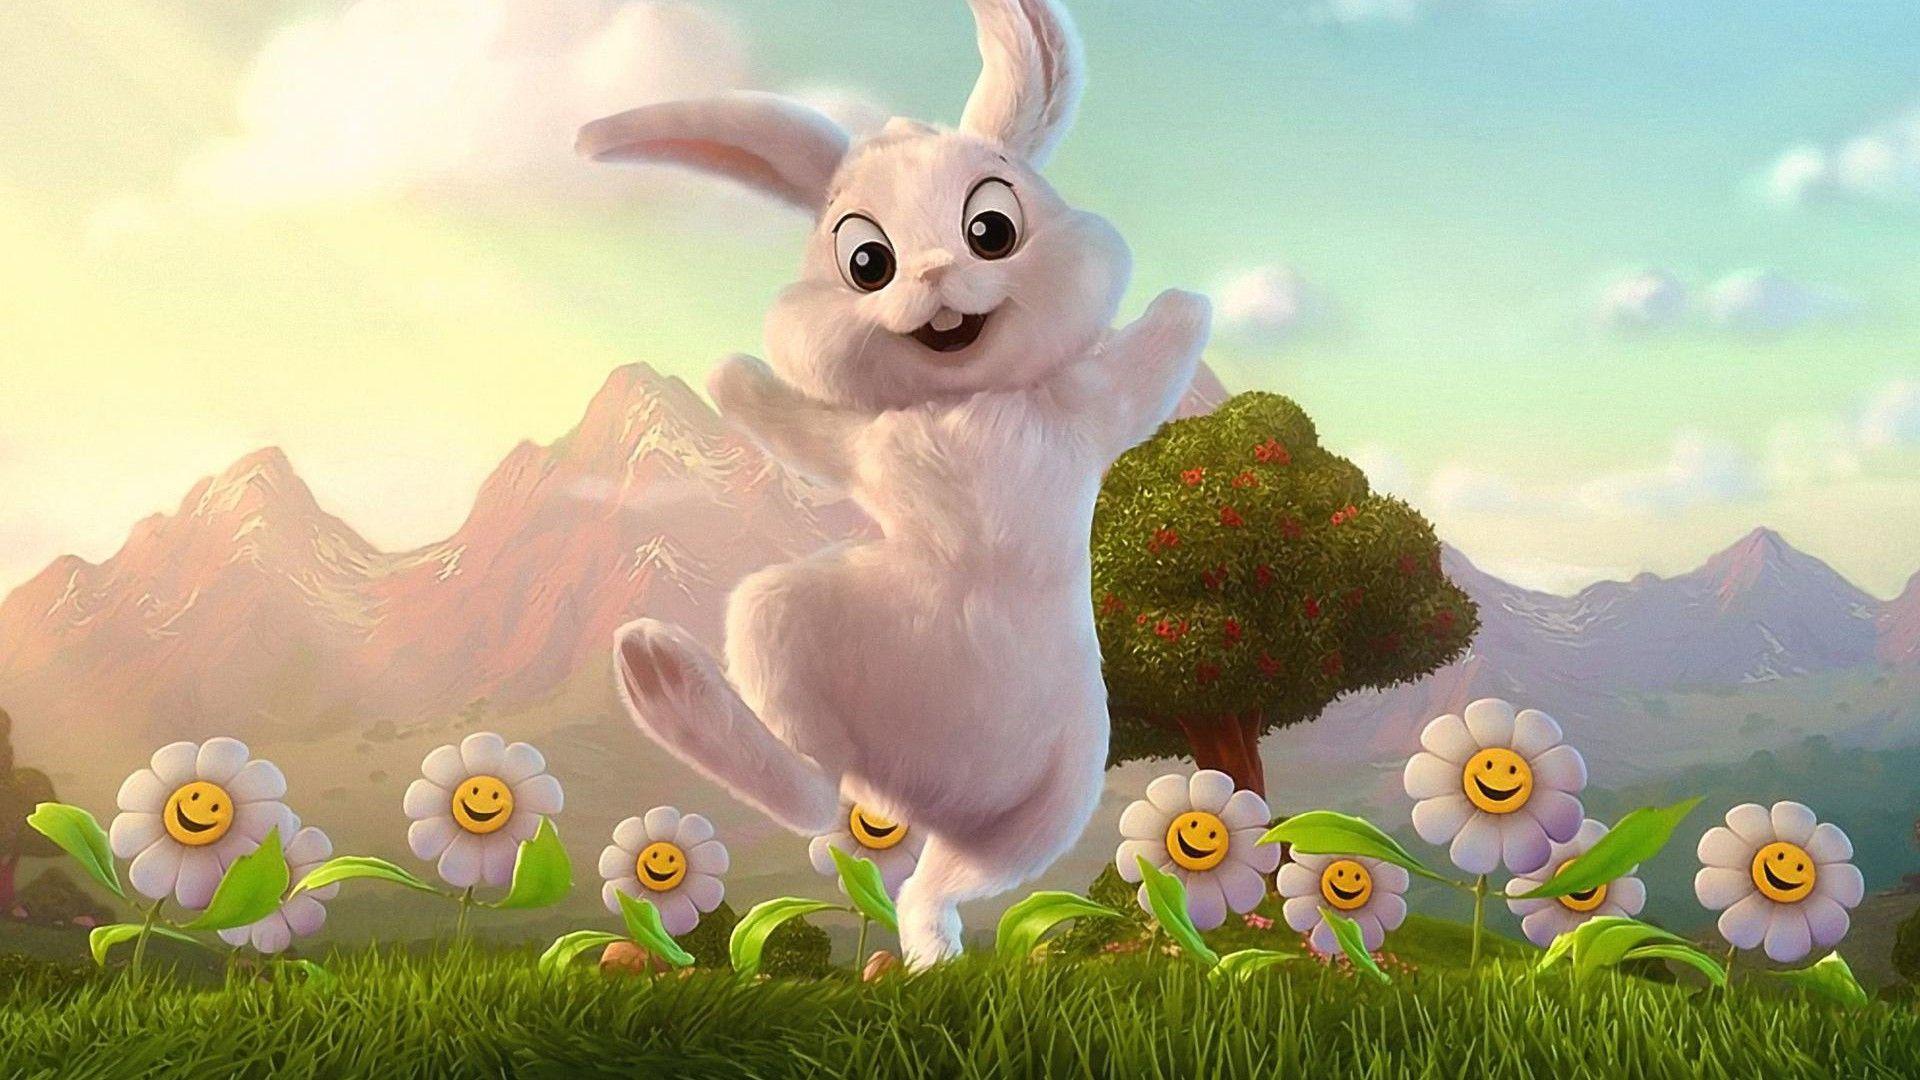 Download 3D Desktop Bunny Rabbits For Mac 1.1